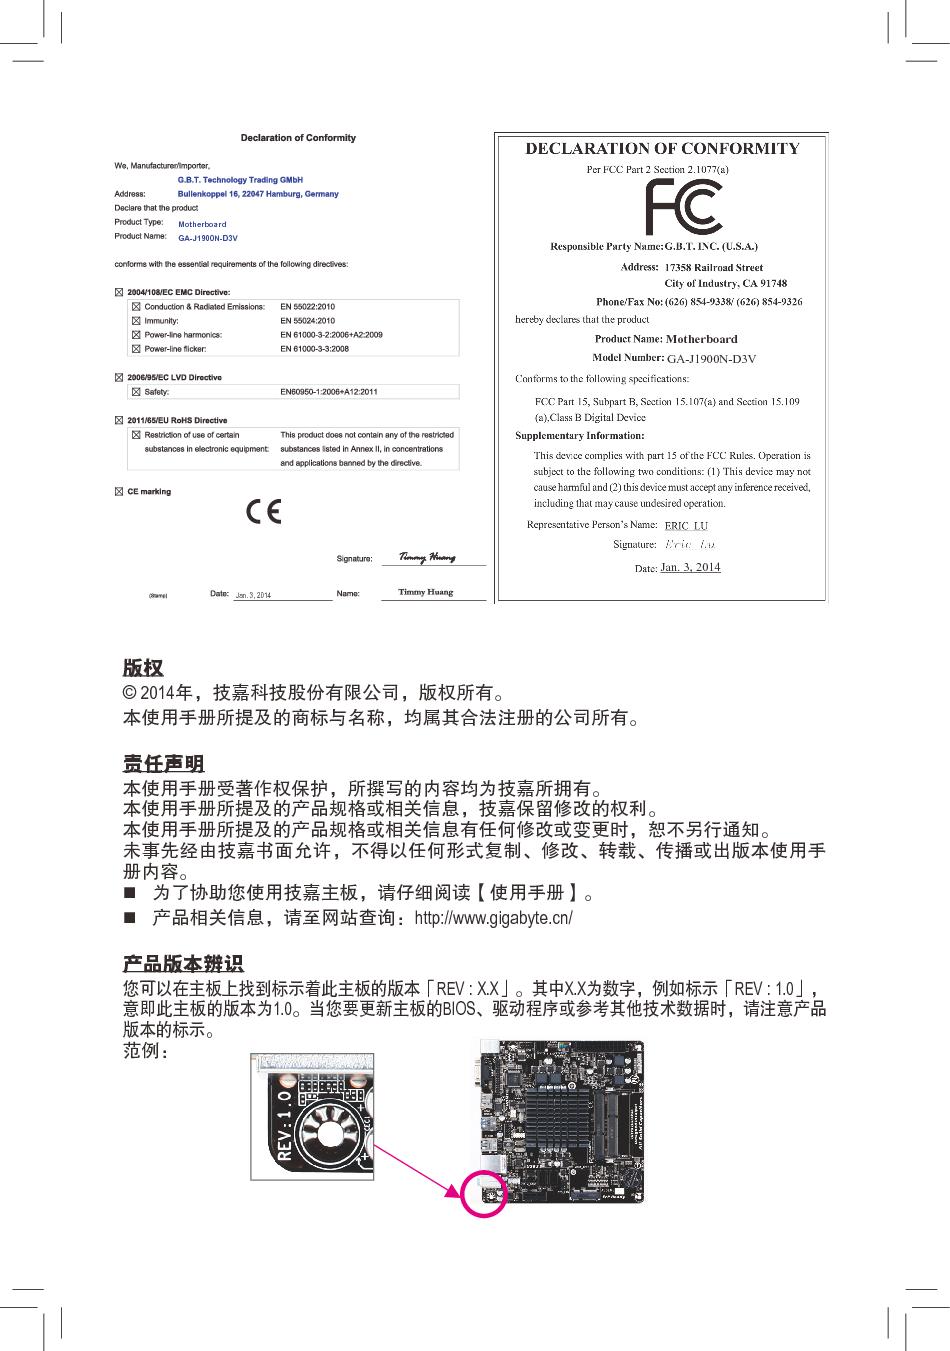 技嘉 Gigabyte GA-J1900N-D3V 使用手册 第1页